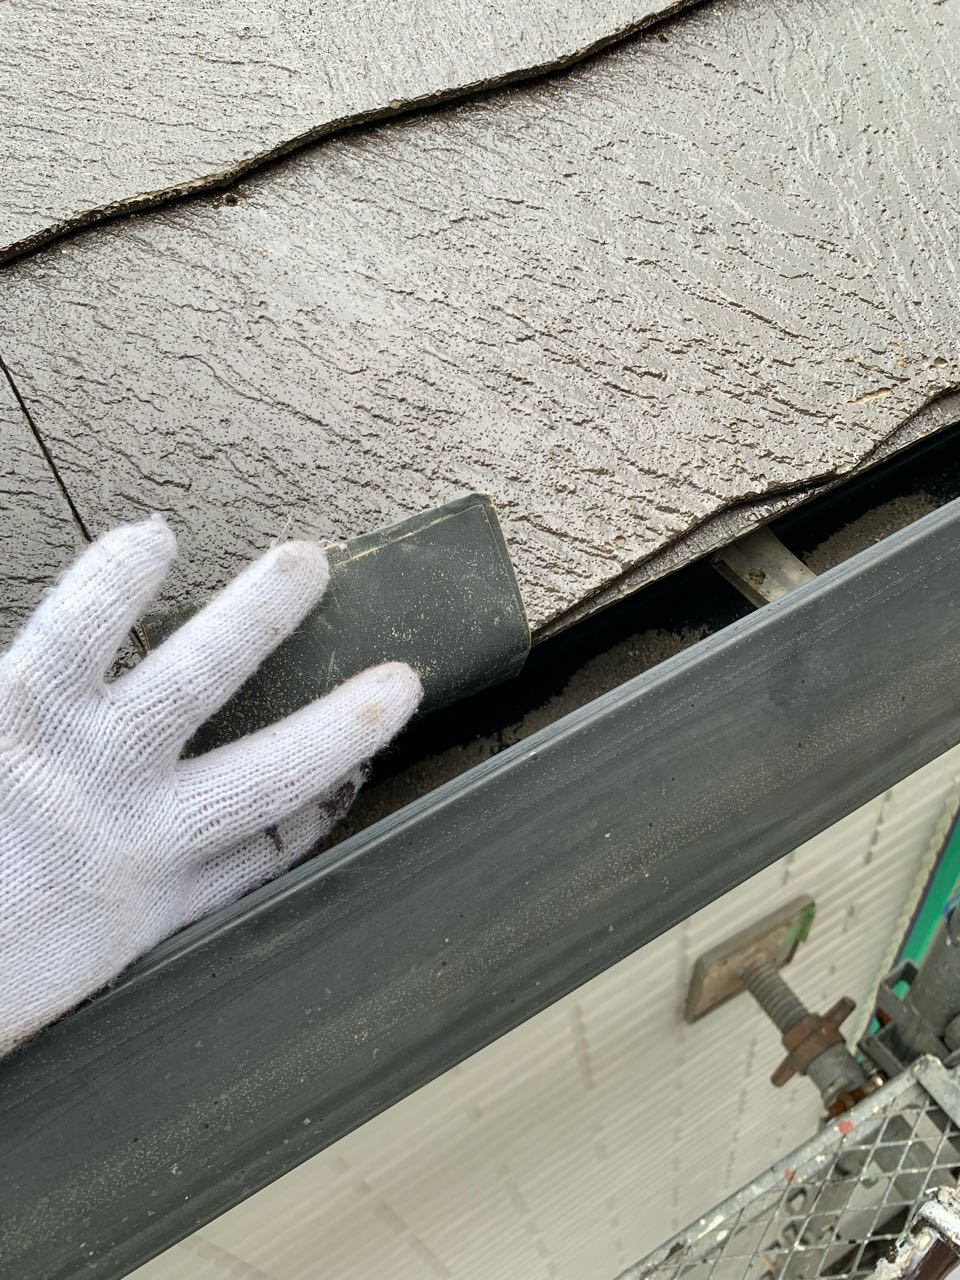 ペーパーを使い表面に微細な傷を付けています。
傷を付けることにより、塗料の付着性が上がります。塗膜が長期にわたり剥がれてこないようにする下処理です。
唐草は屋根材の奥にある水切り板金です。わかりにくいところです💦
細かなところですが確実に工程をこなします。